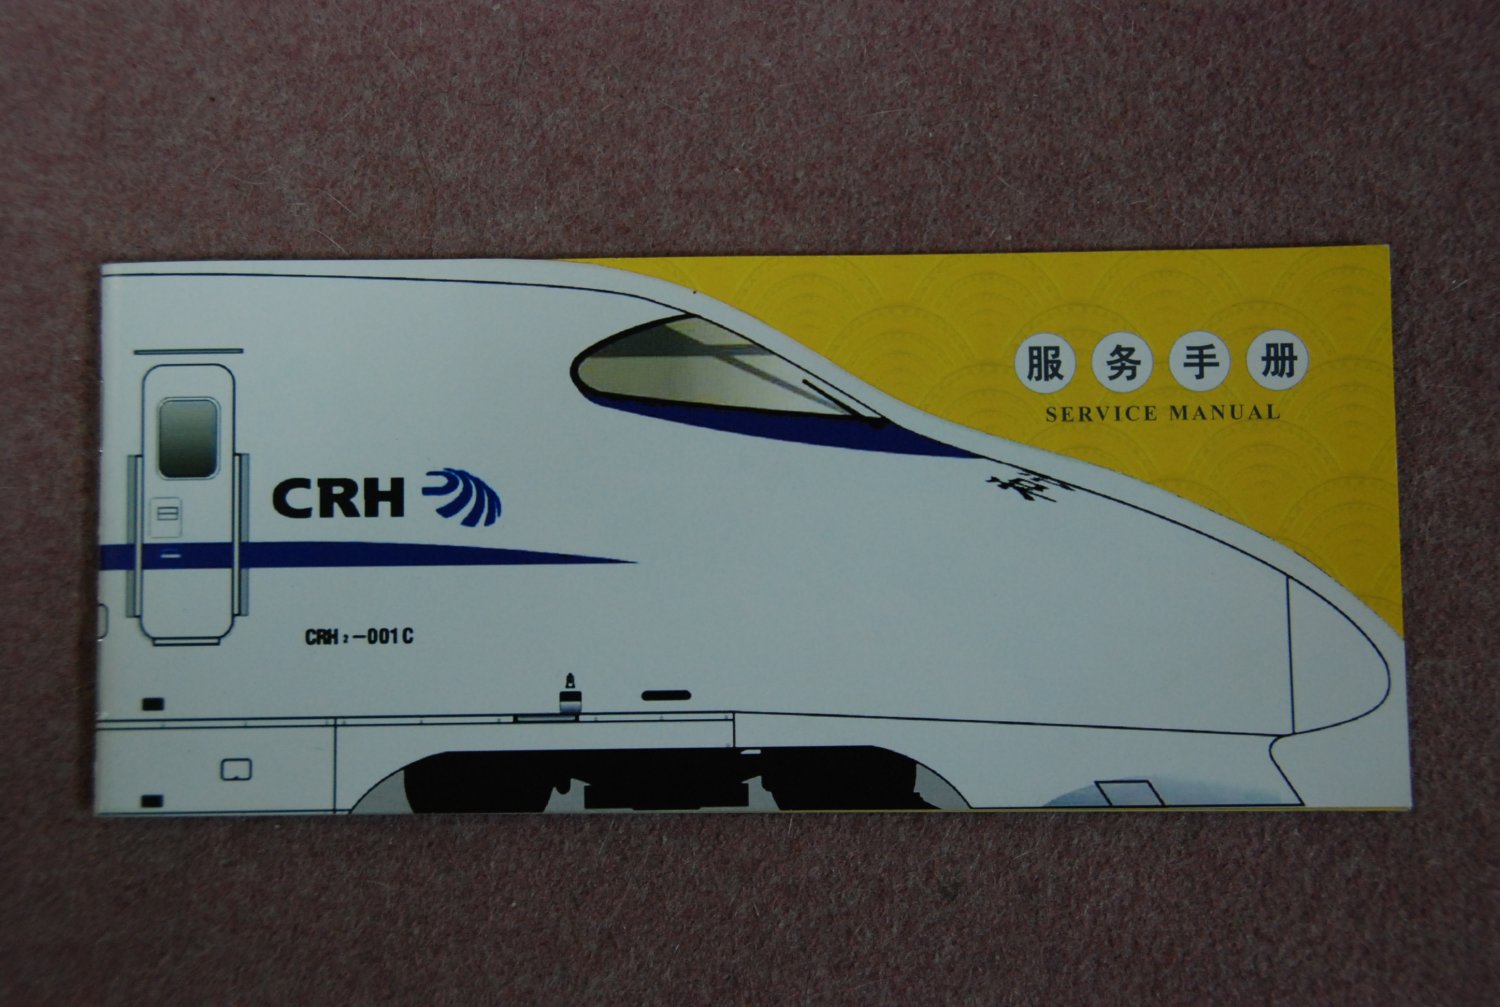 中国新幹線 CRH2 服務手帳